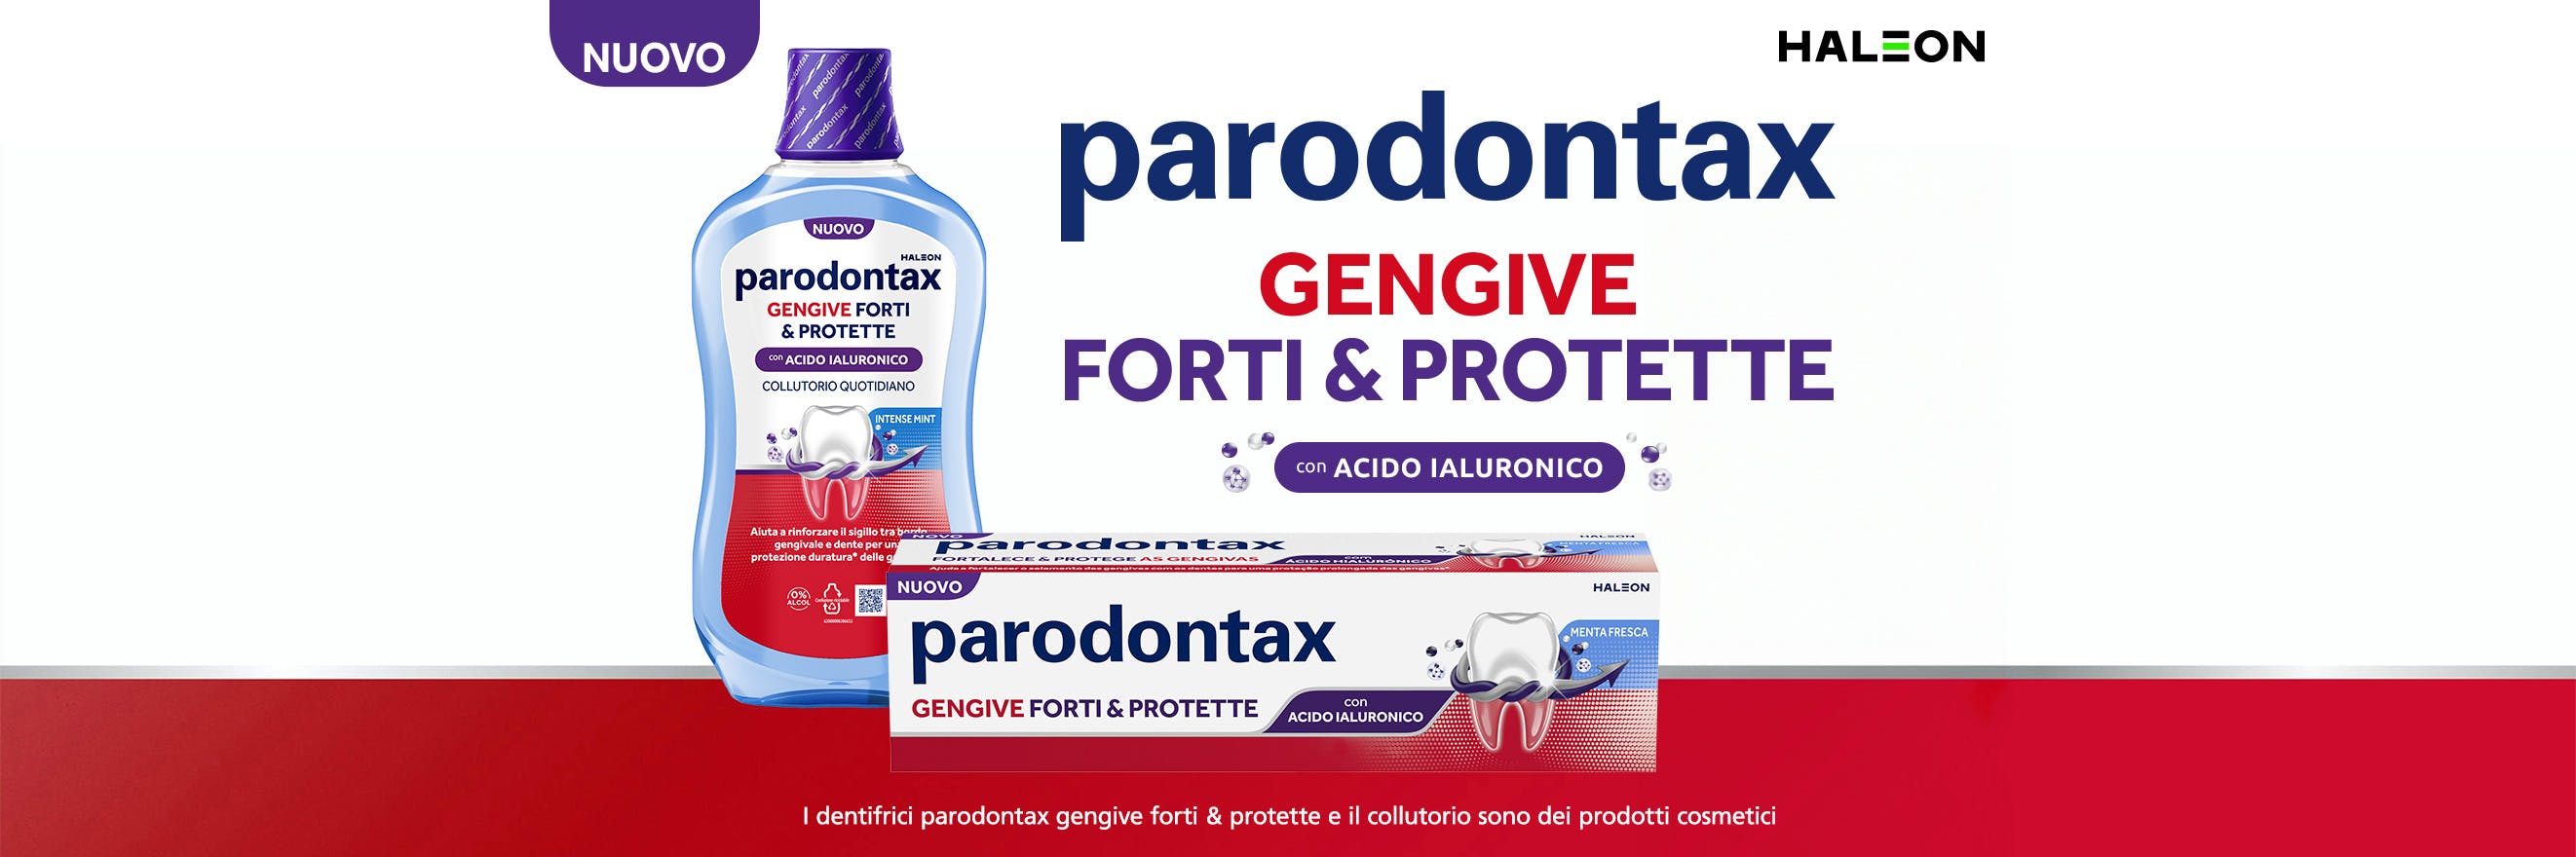 Parodontax Gengive Forti & Protette con Acido Ialuronico